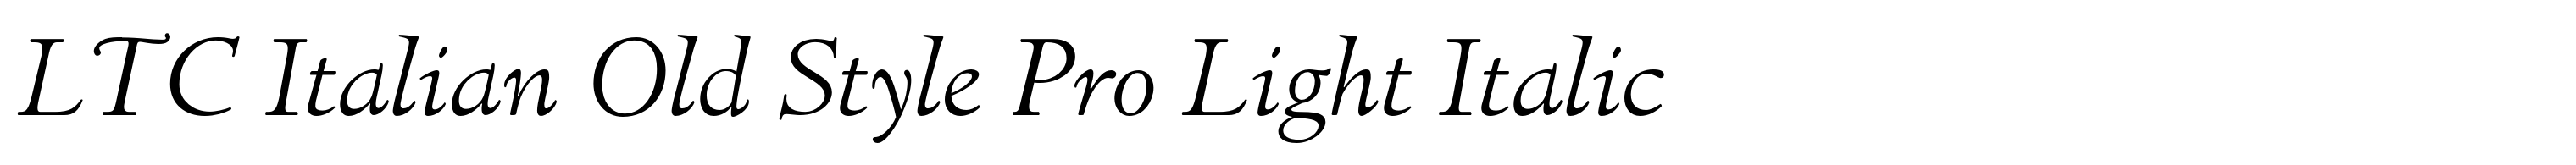 LTC Italian Old Style Pro Light Italic